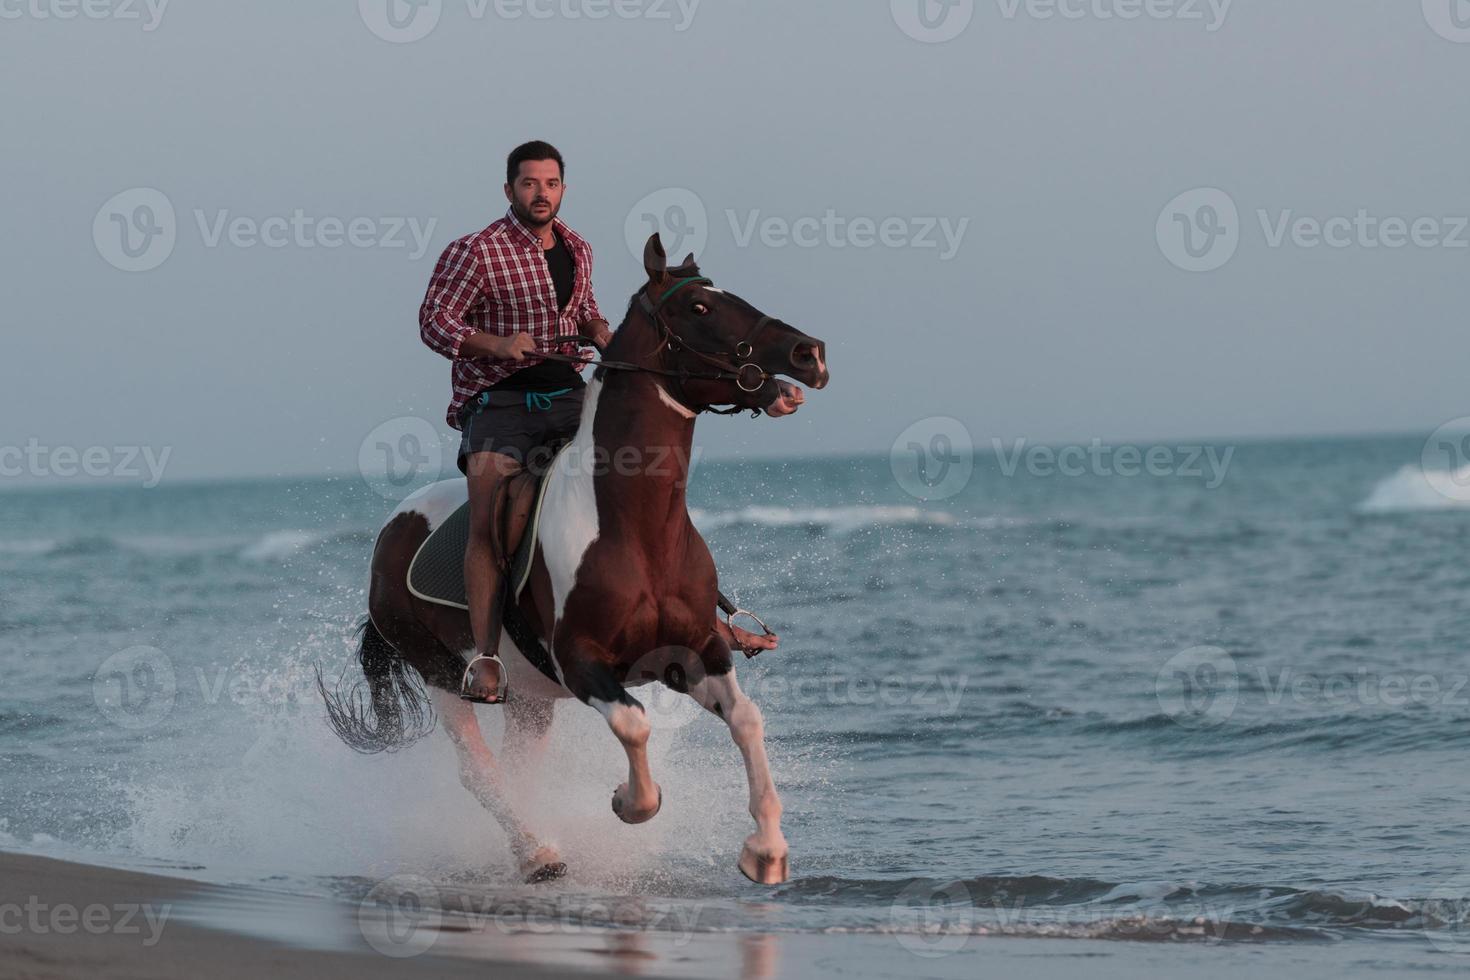 un homme moderne en vêtements d'été aime monter à cheval sur une belle plage de sable au coucher du soleil. mise au point sélective photo